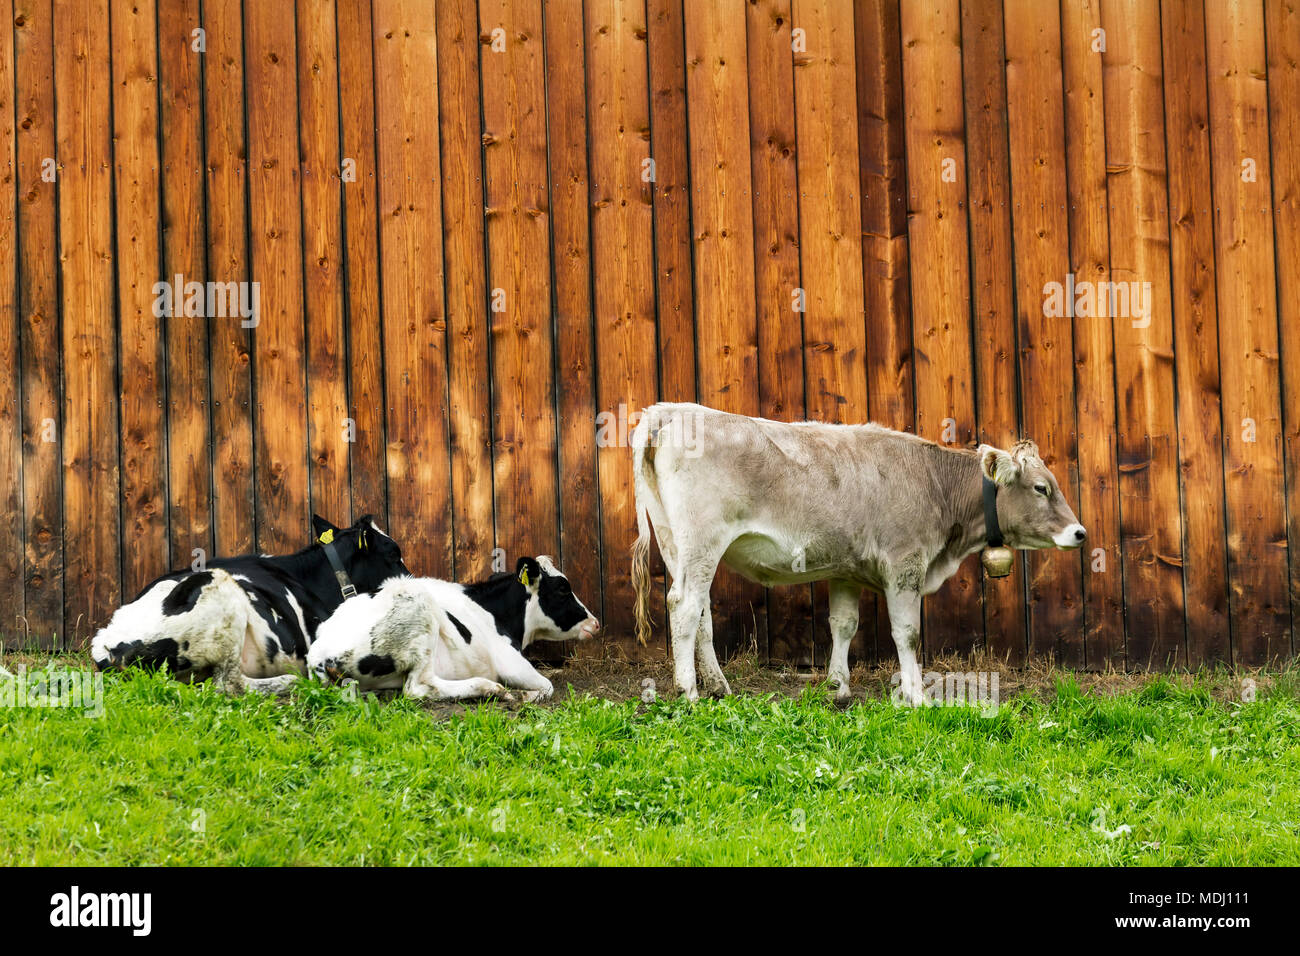 Bestiame lungo un fienile in legno parete; San Candido, Bolzano, Italia Foto Stock